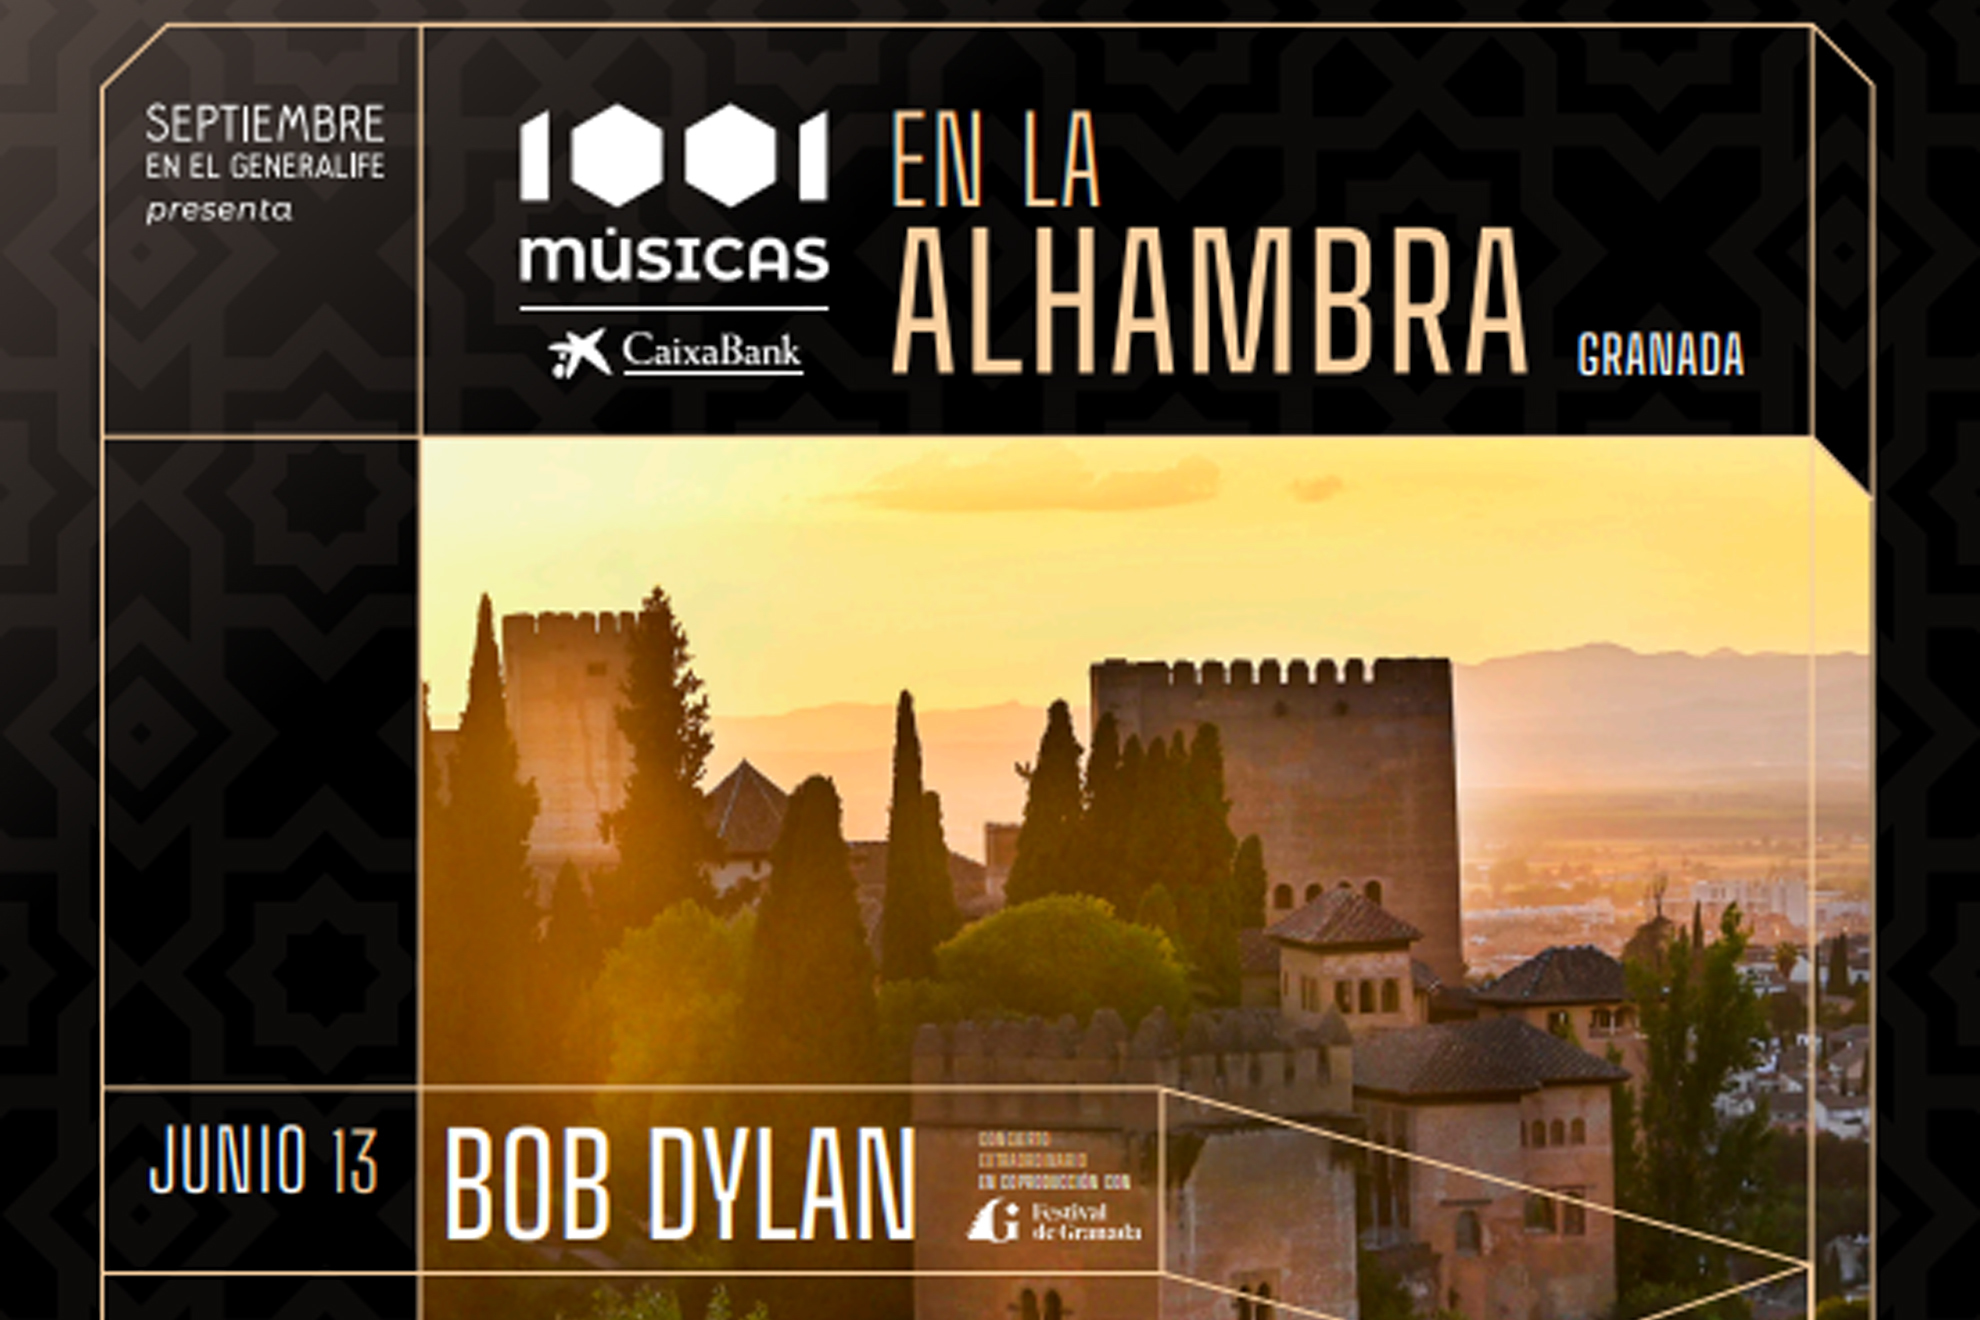 El ciclo '1001 Músicas - CaixaBank', que se celebra en la Alhambra, presenta su cartel completo en Madrid